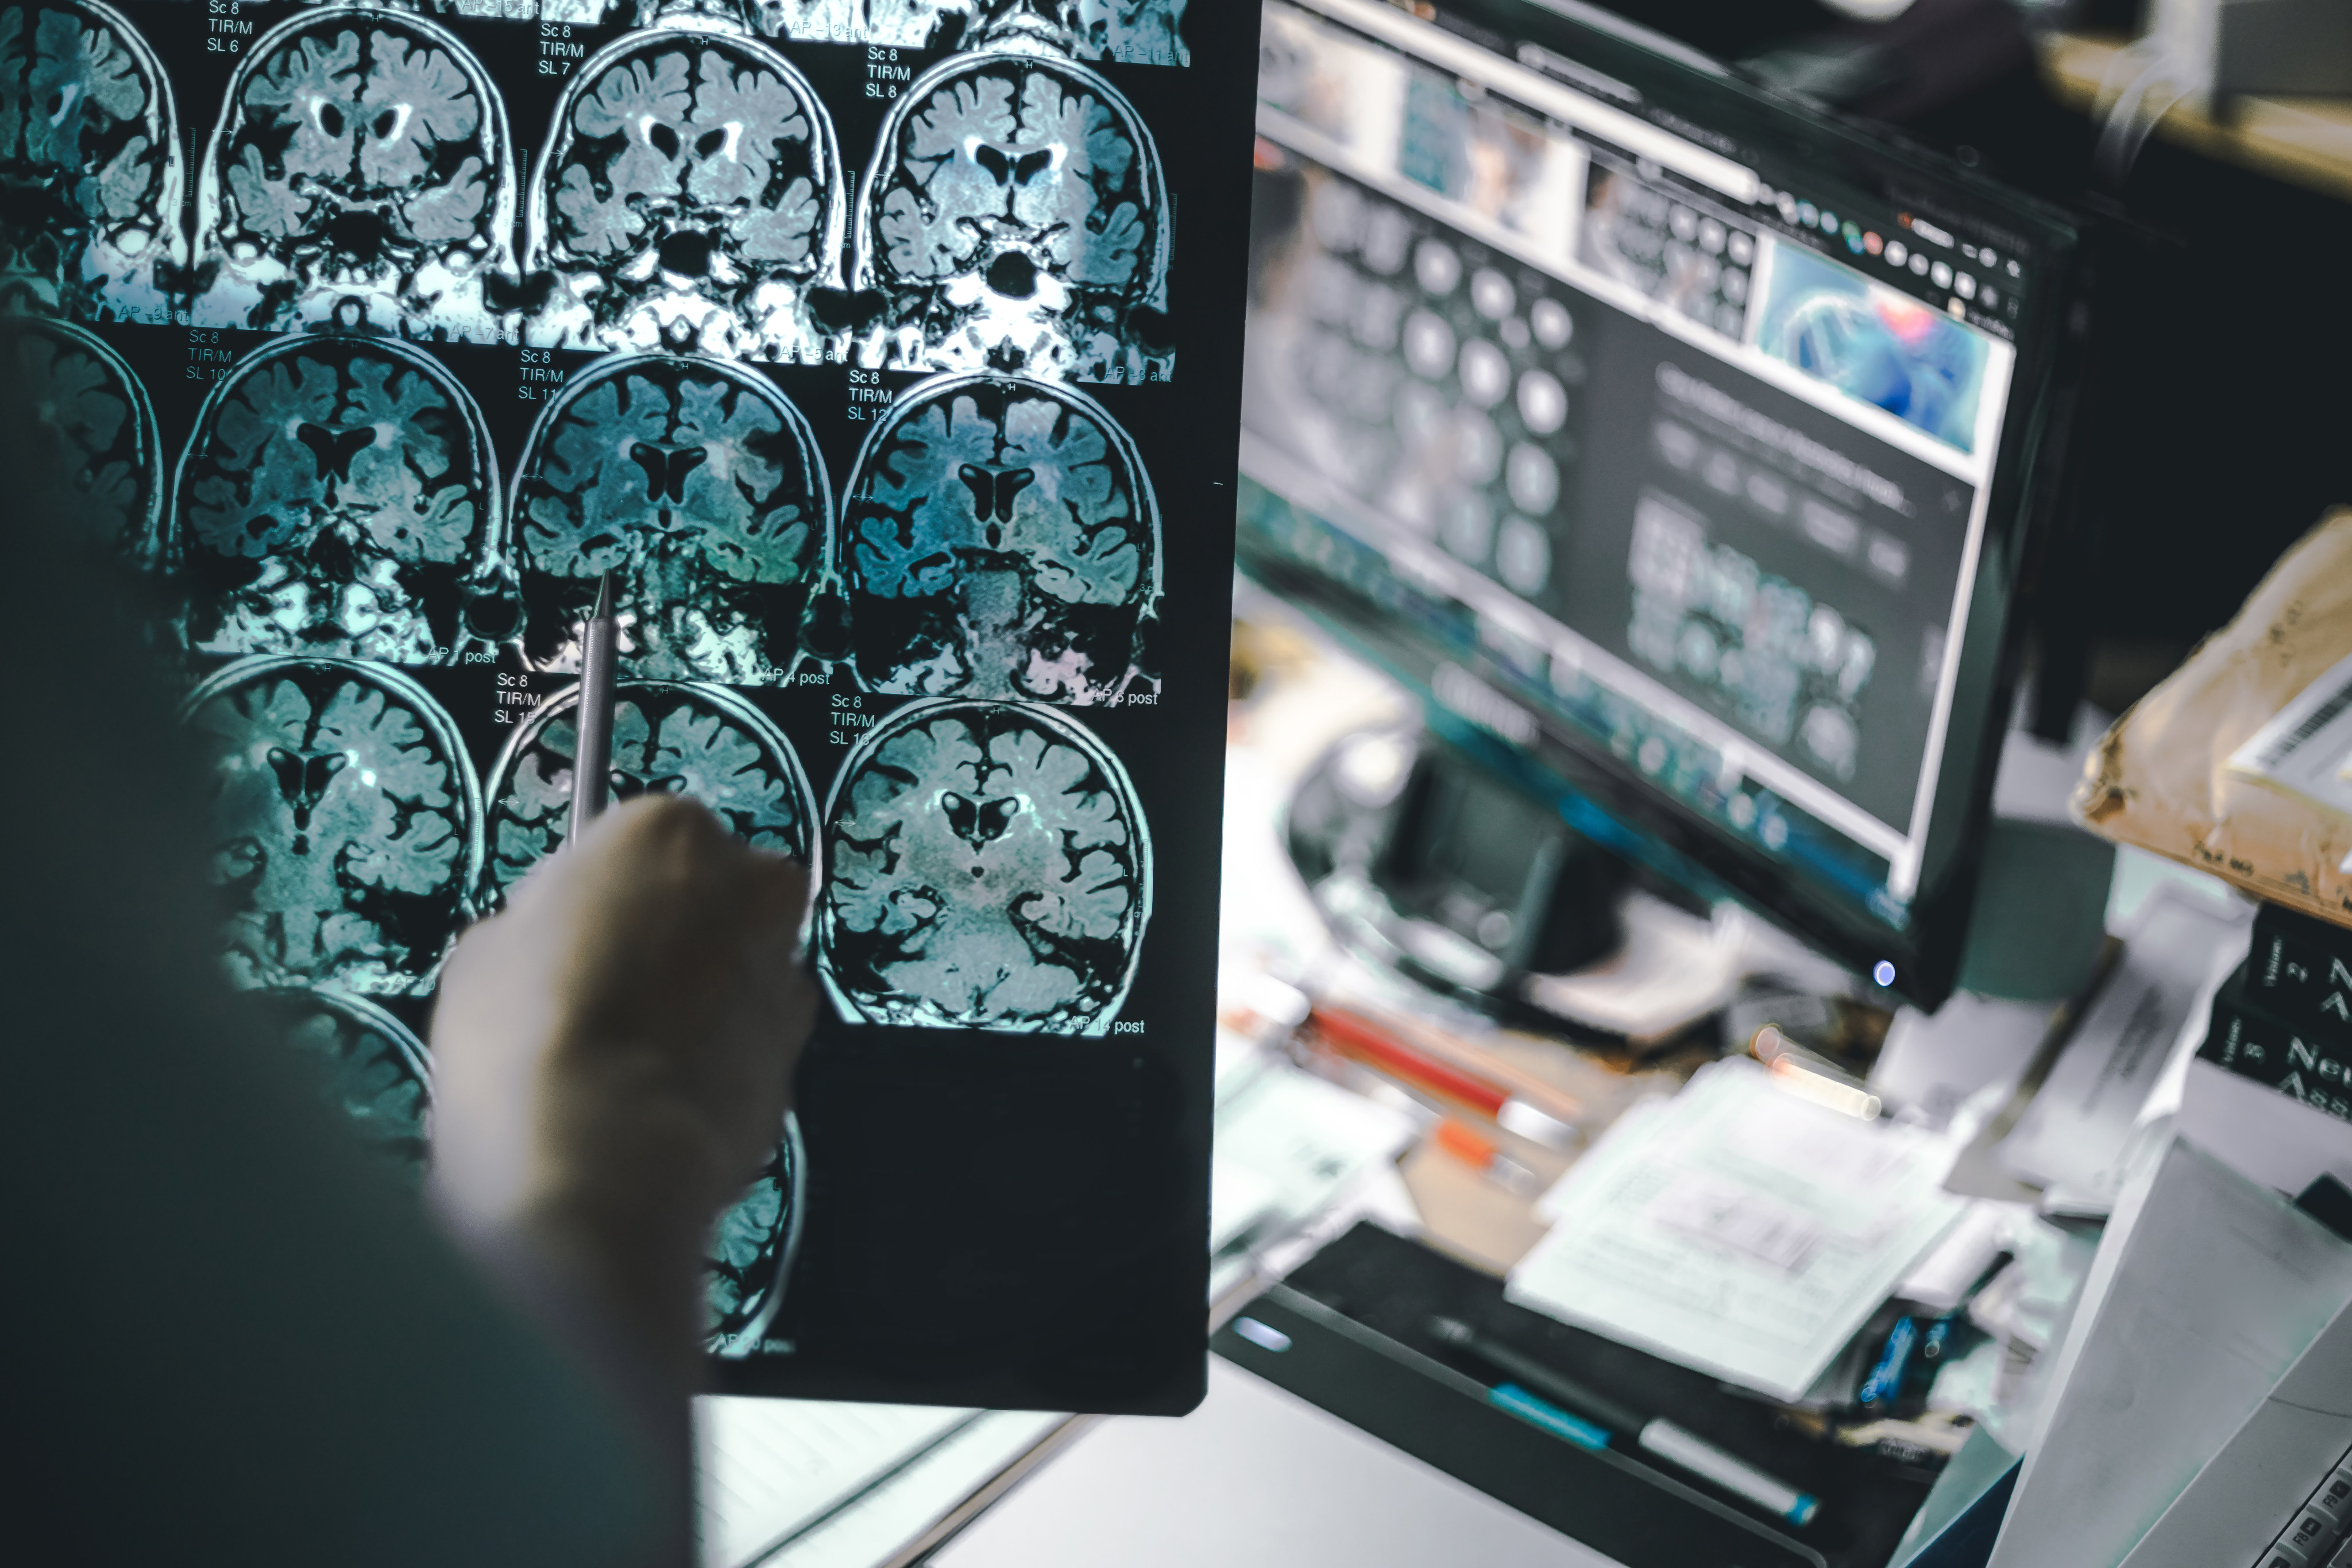 An MRI scan shows the progress of Alzheimer’s disease. Photo: Shutterstock